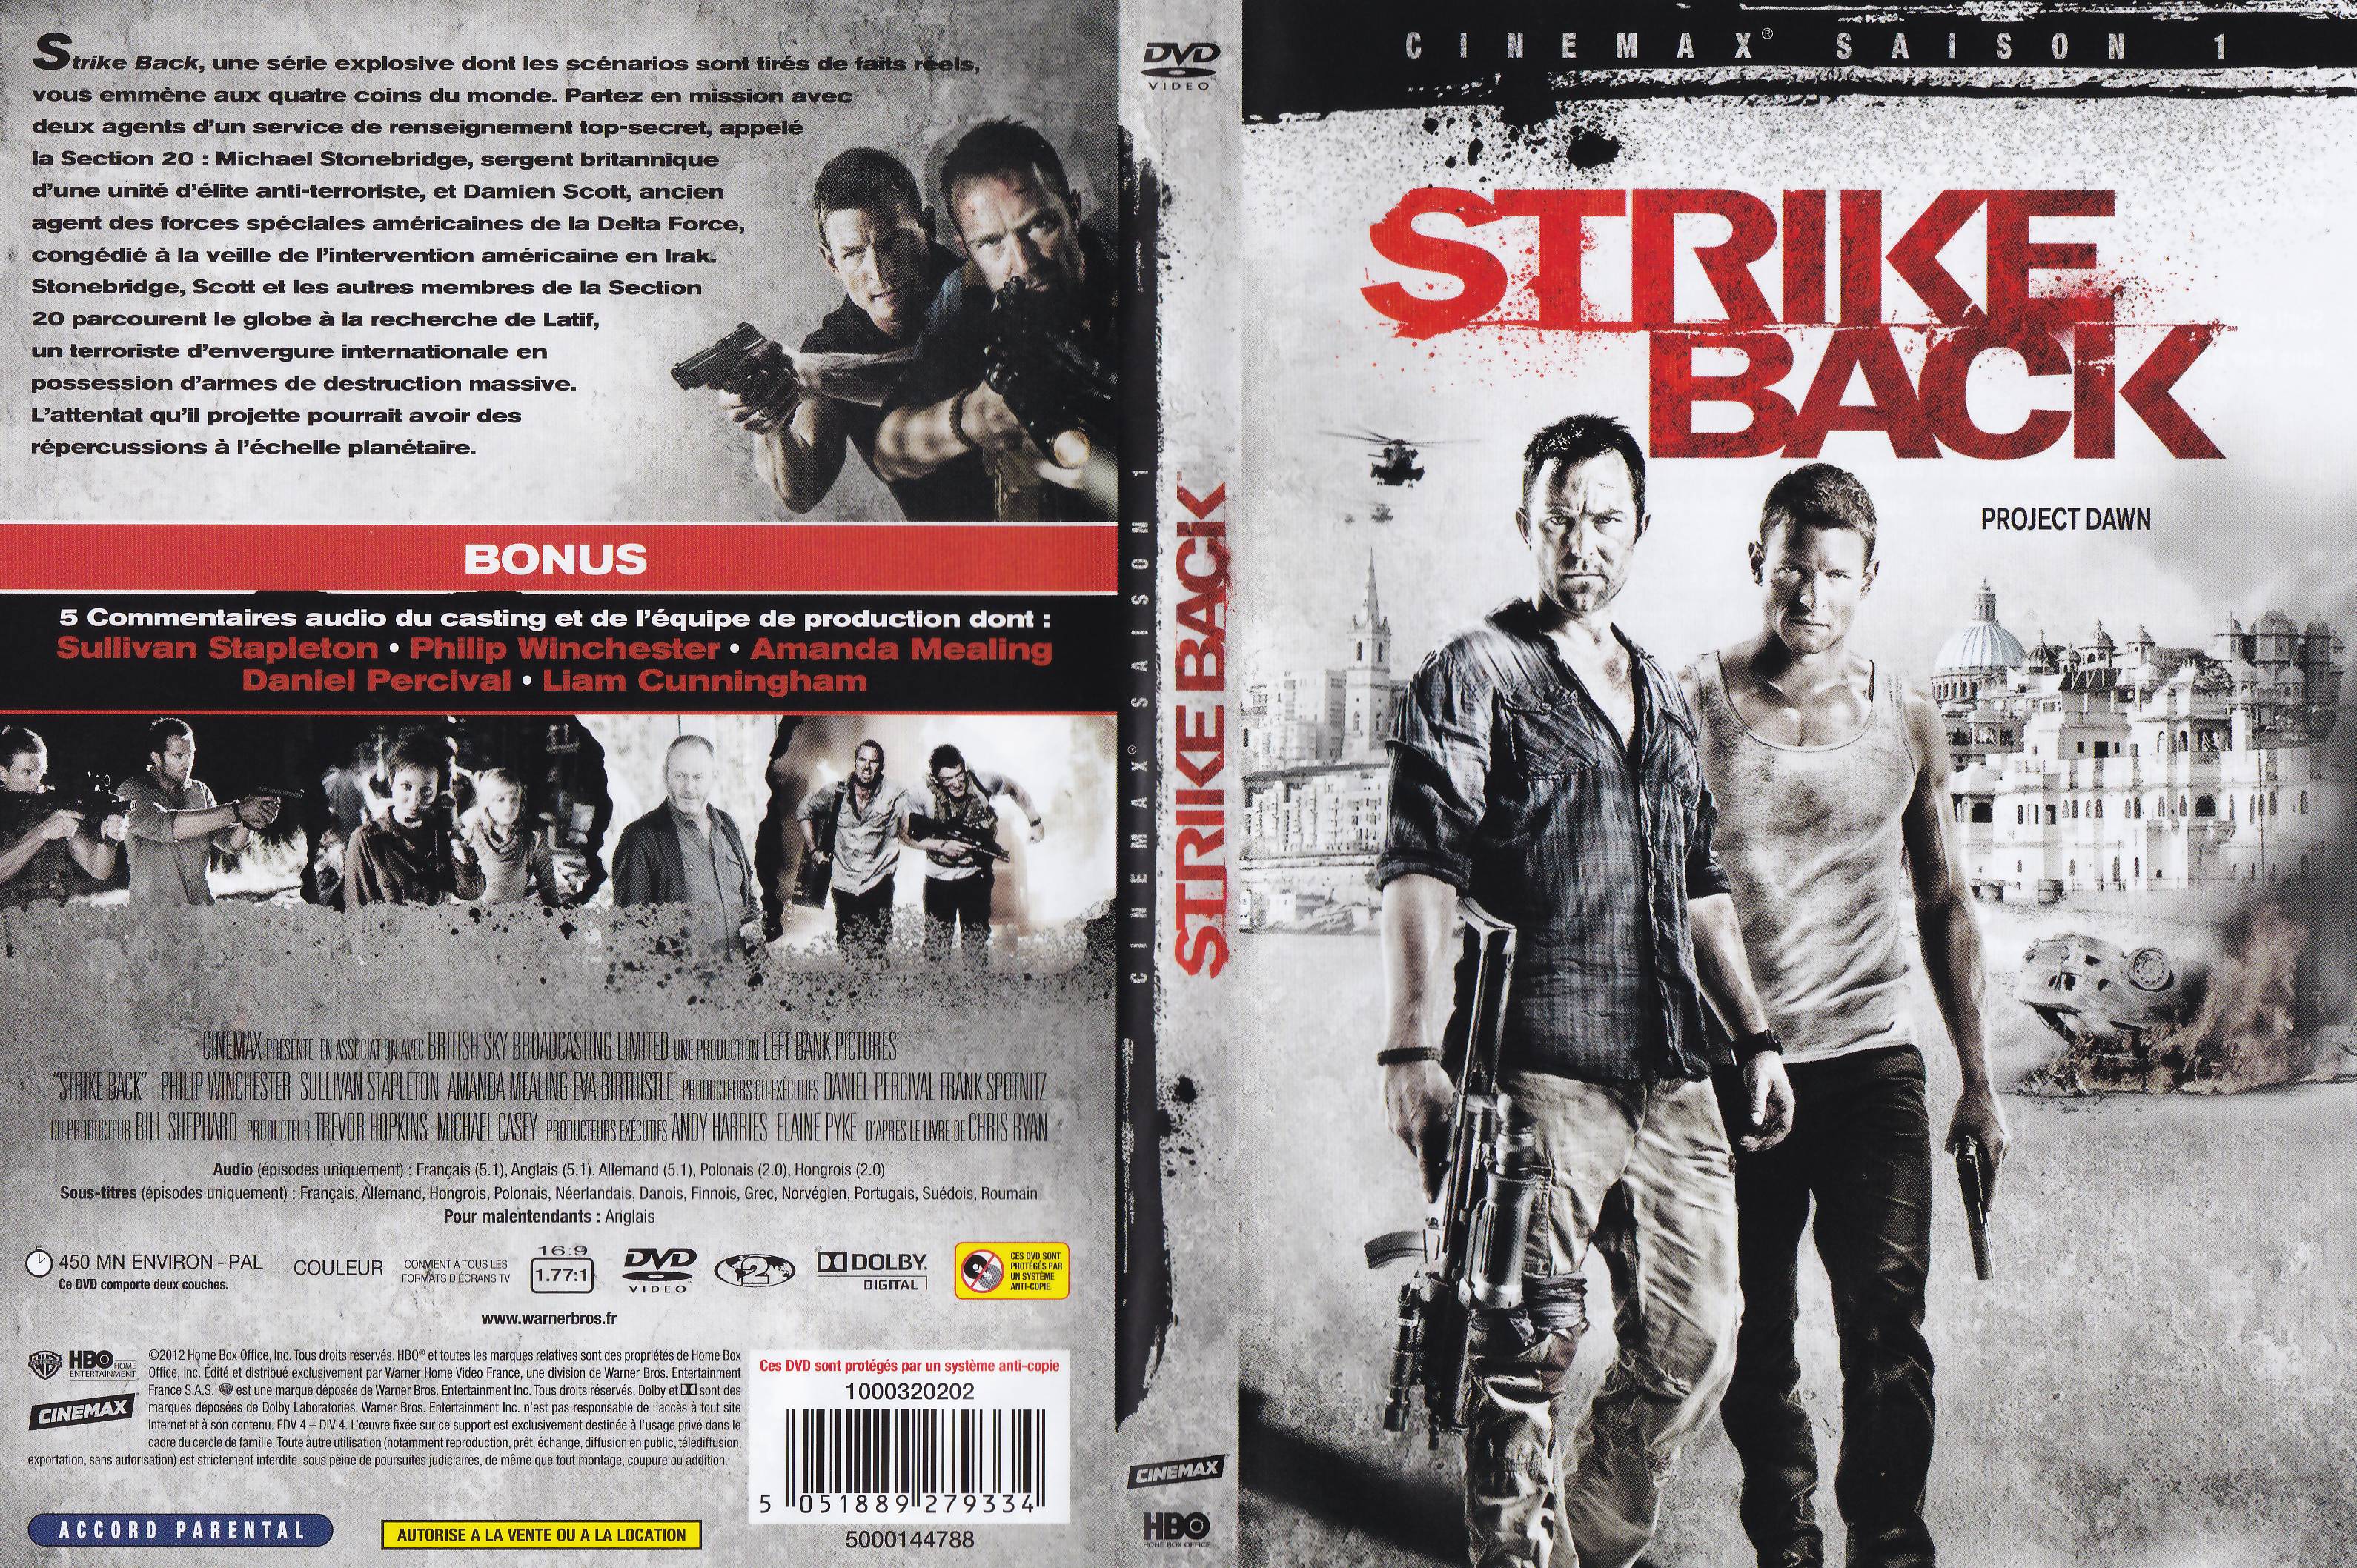 Jaquette DVD Strike Back saison 1 